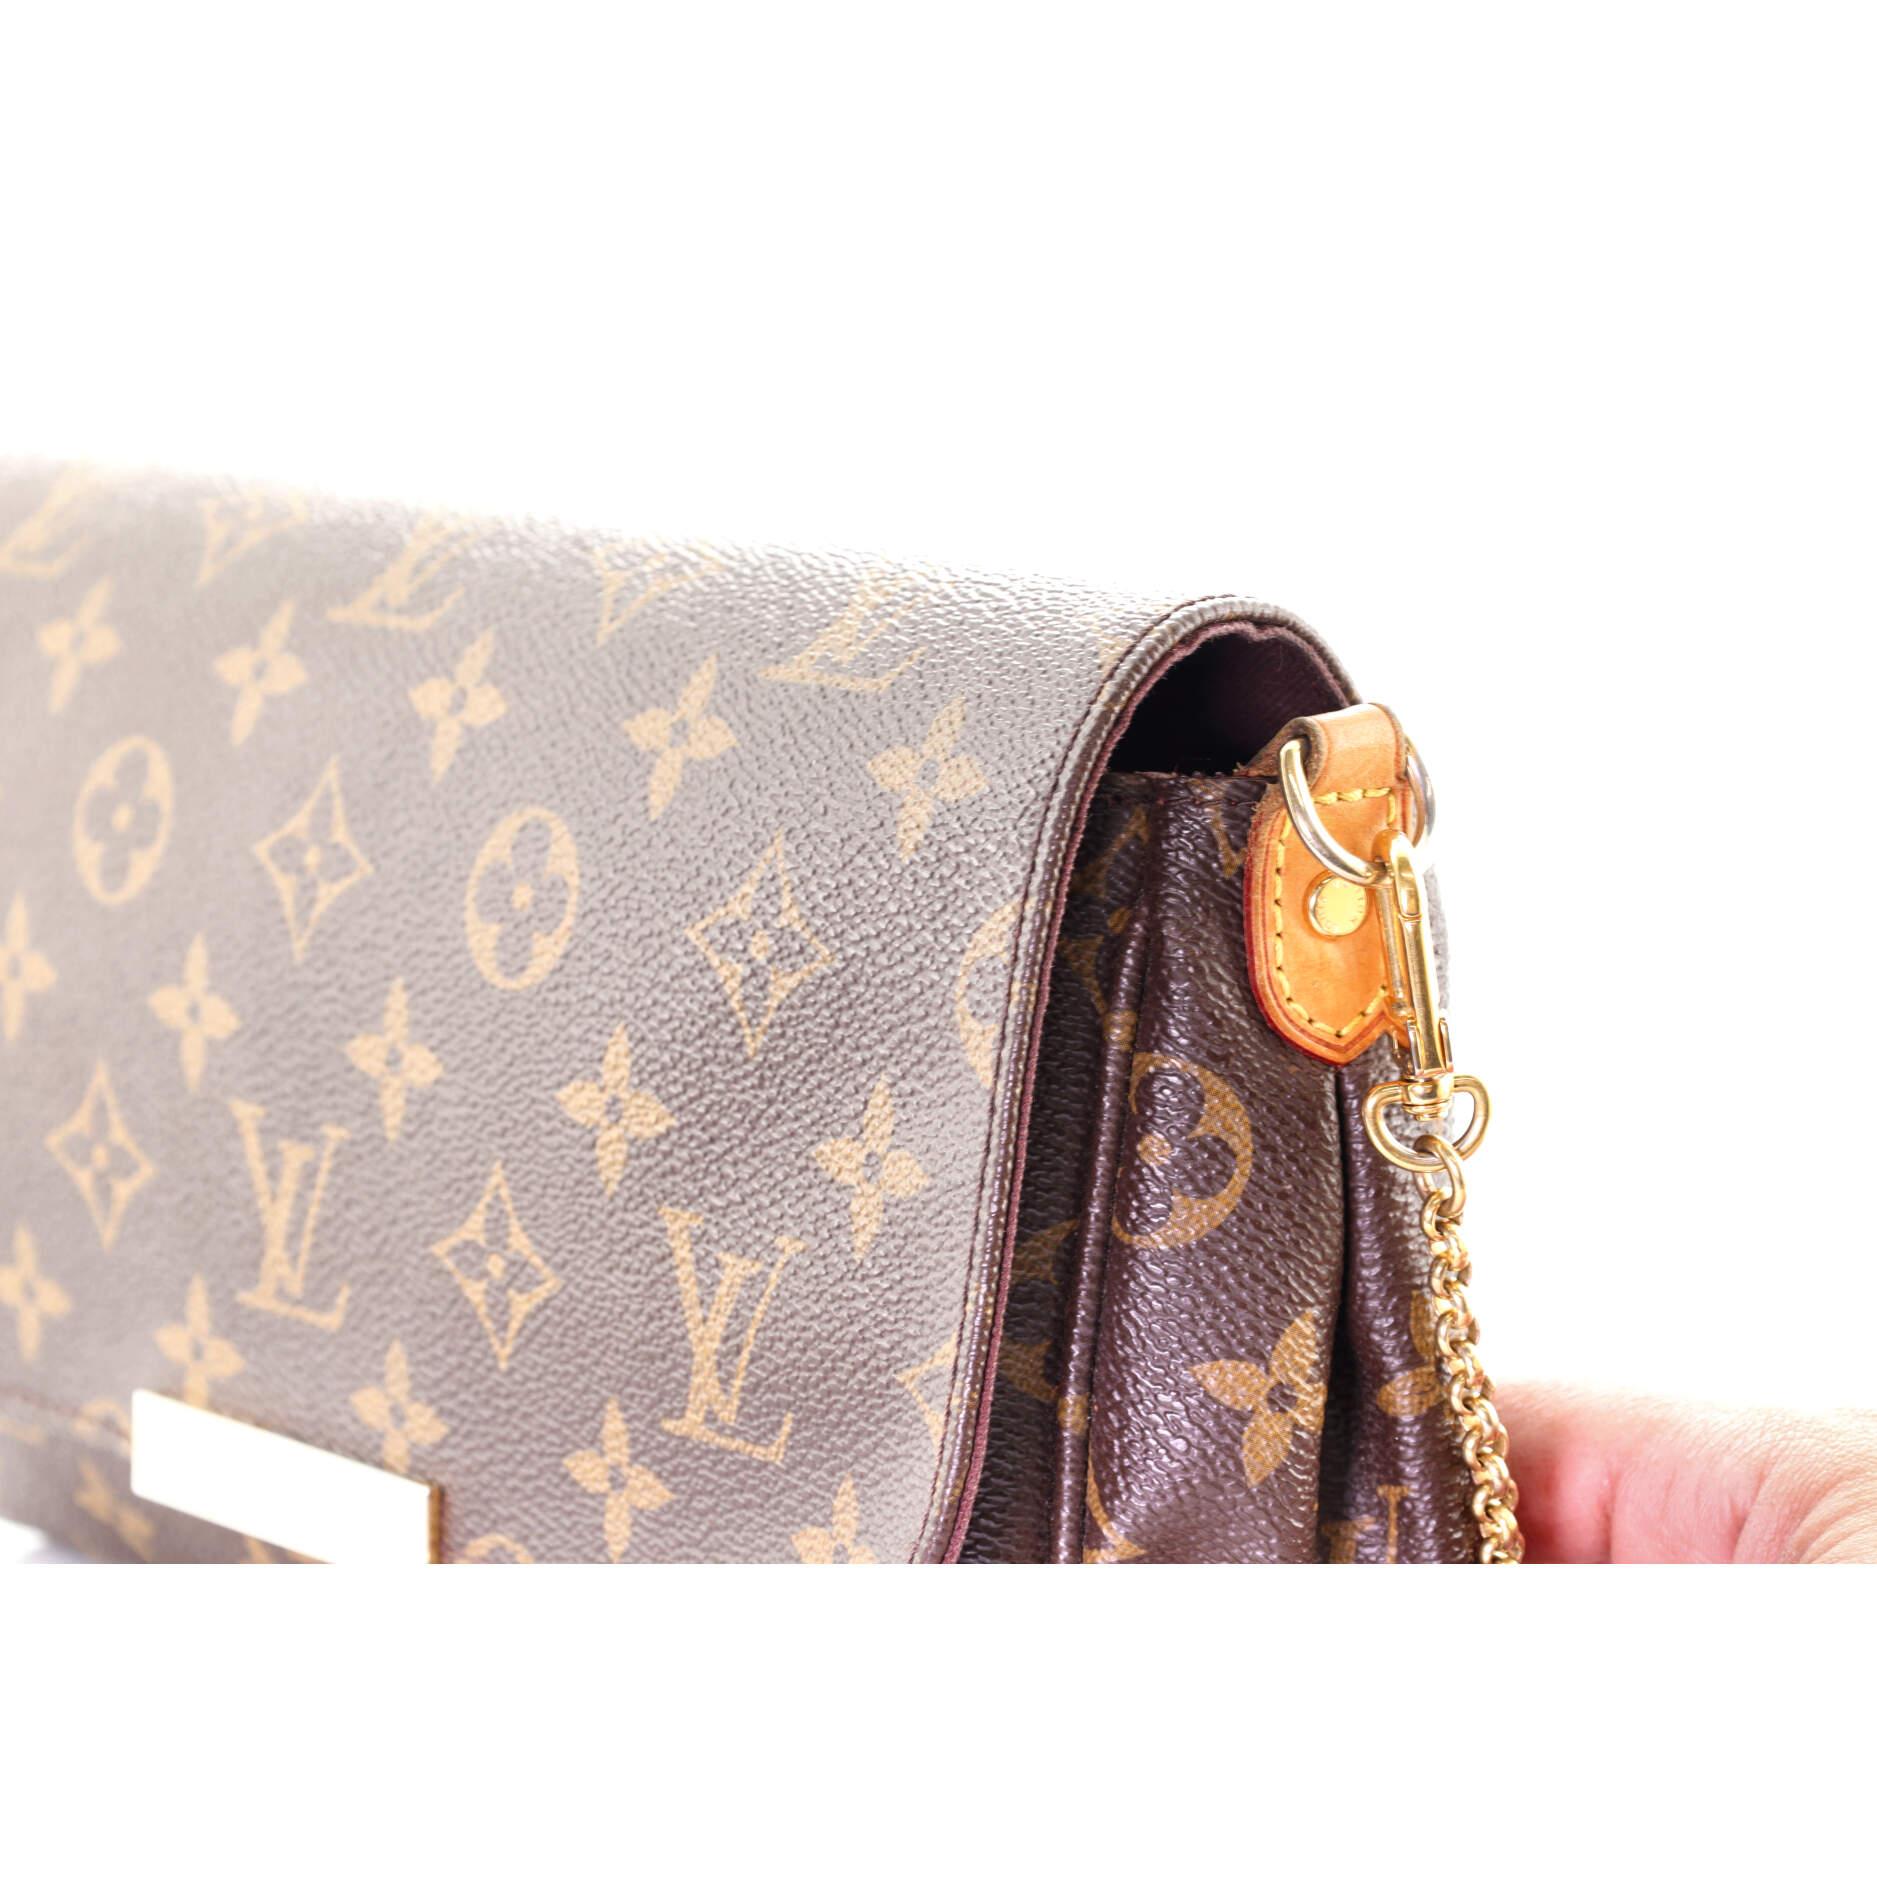  Louis Vuitton Favorite Handbag Monogram Canvas MM In Good Condition In NY, NY